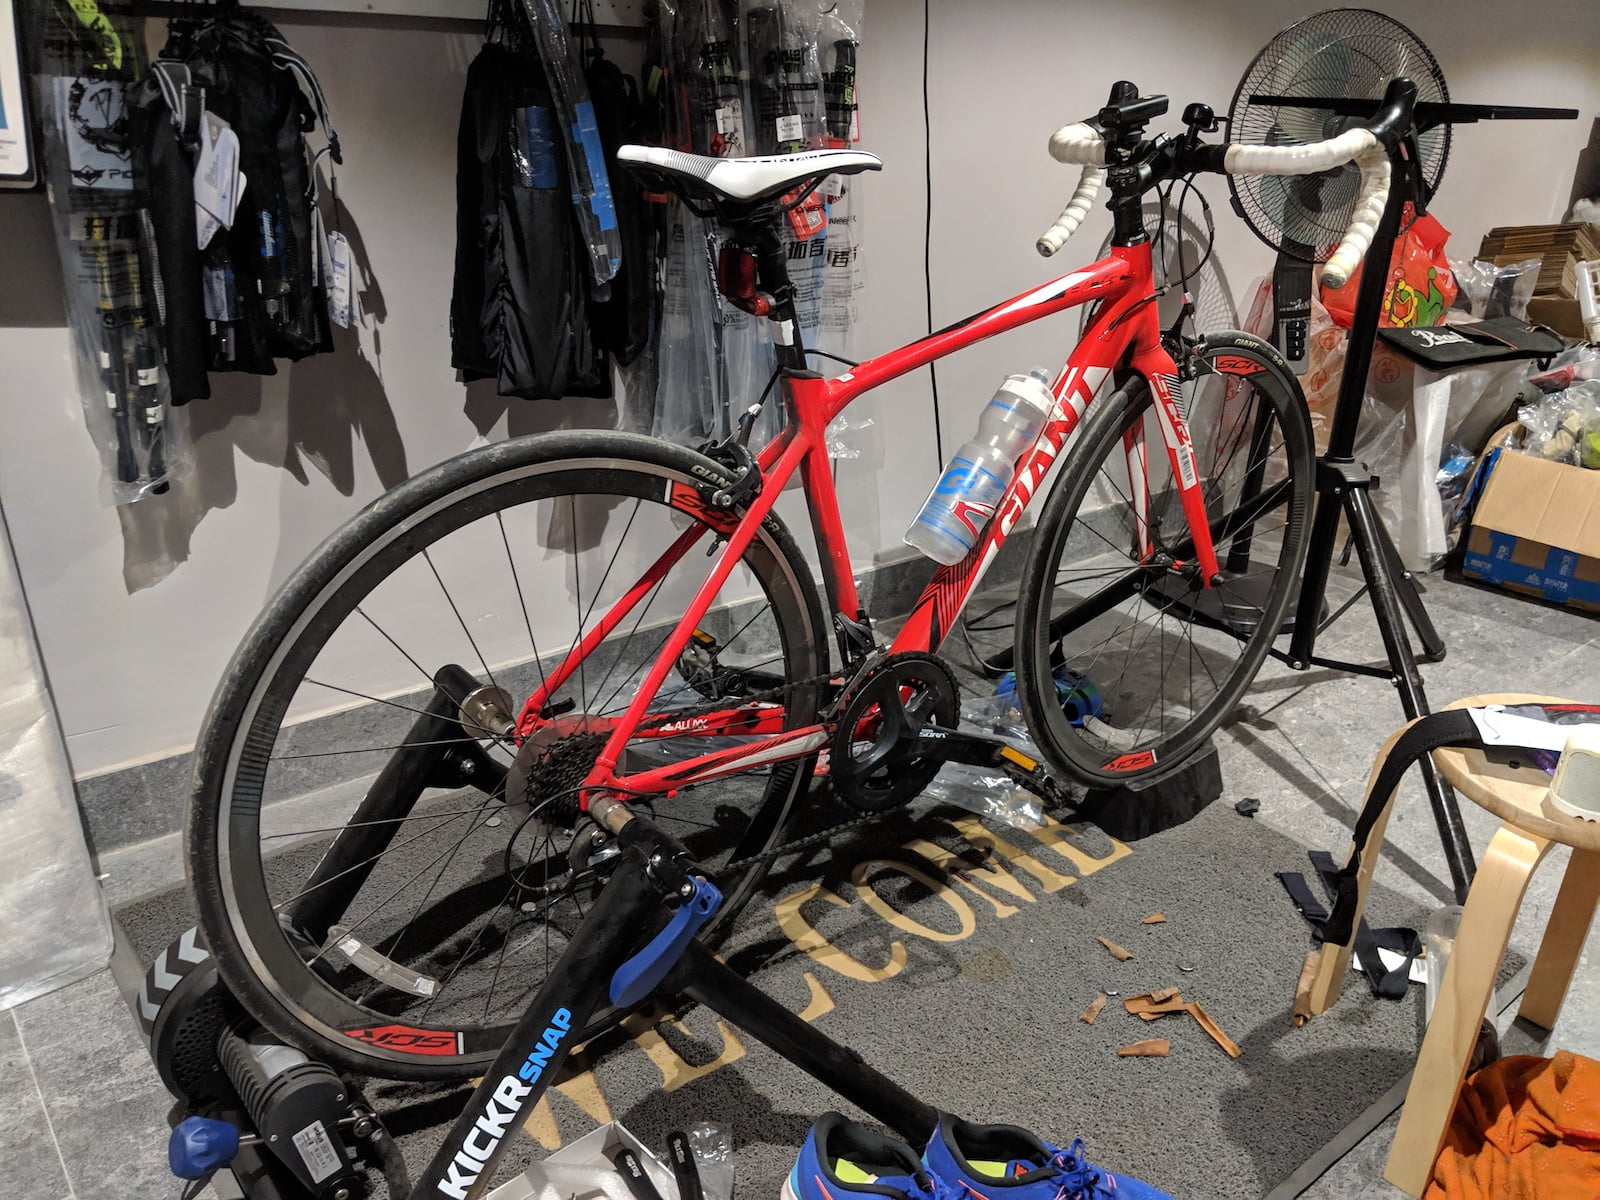 IM 70.3 2019 – [Tuần 19] Giảm tải, học thay lốp xe, gửi xe đạp - giant scr